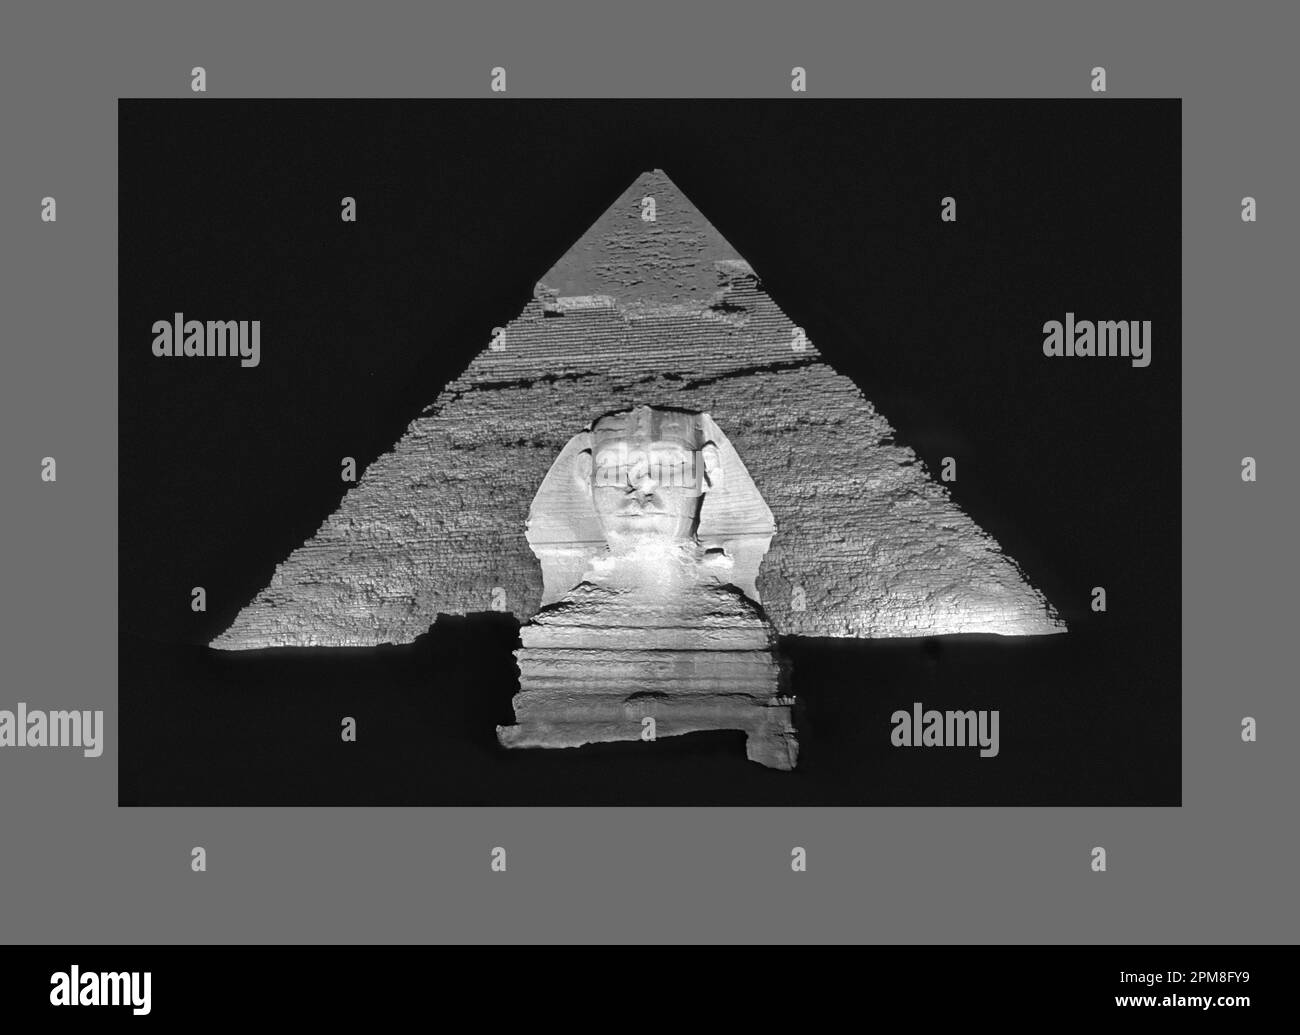 Égypte, le Caire. Gizeh ou Gizeh. Sphinx devant la pyramide de Chephren. Spectacle son et lumière. UNESCO, site du patrimoine mondial. Image noir et blanc. Banque D'Images